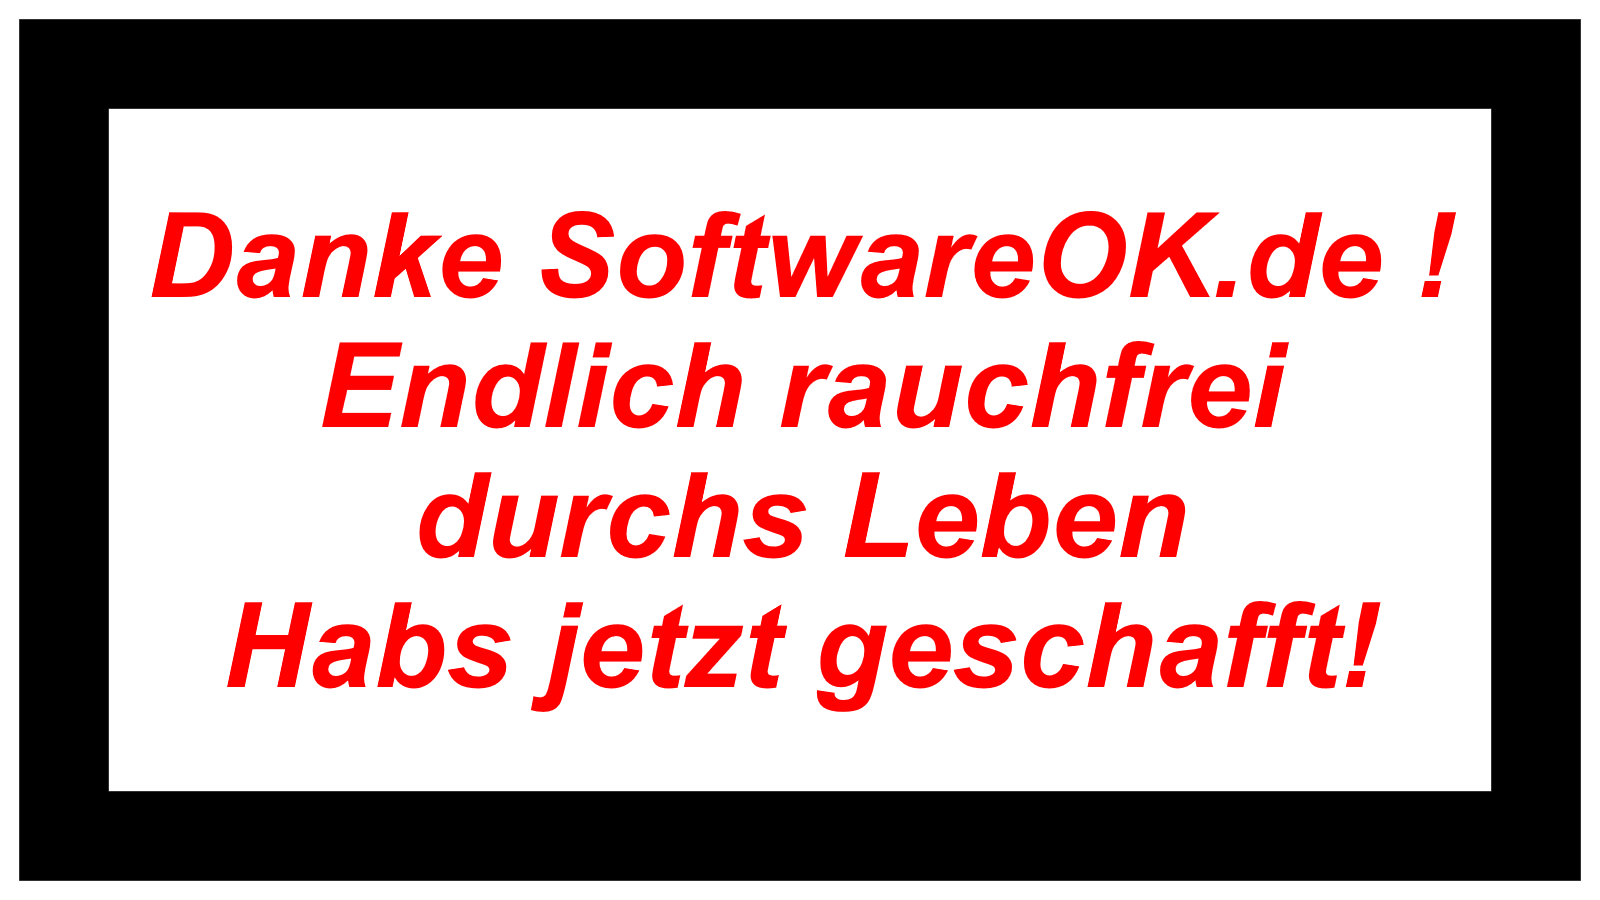 Danke SoftwareOK.de ! Endlich rauchfrei durchs Leben Habs jetzt geschafft!